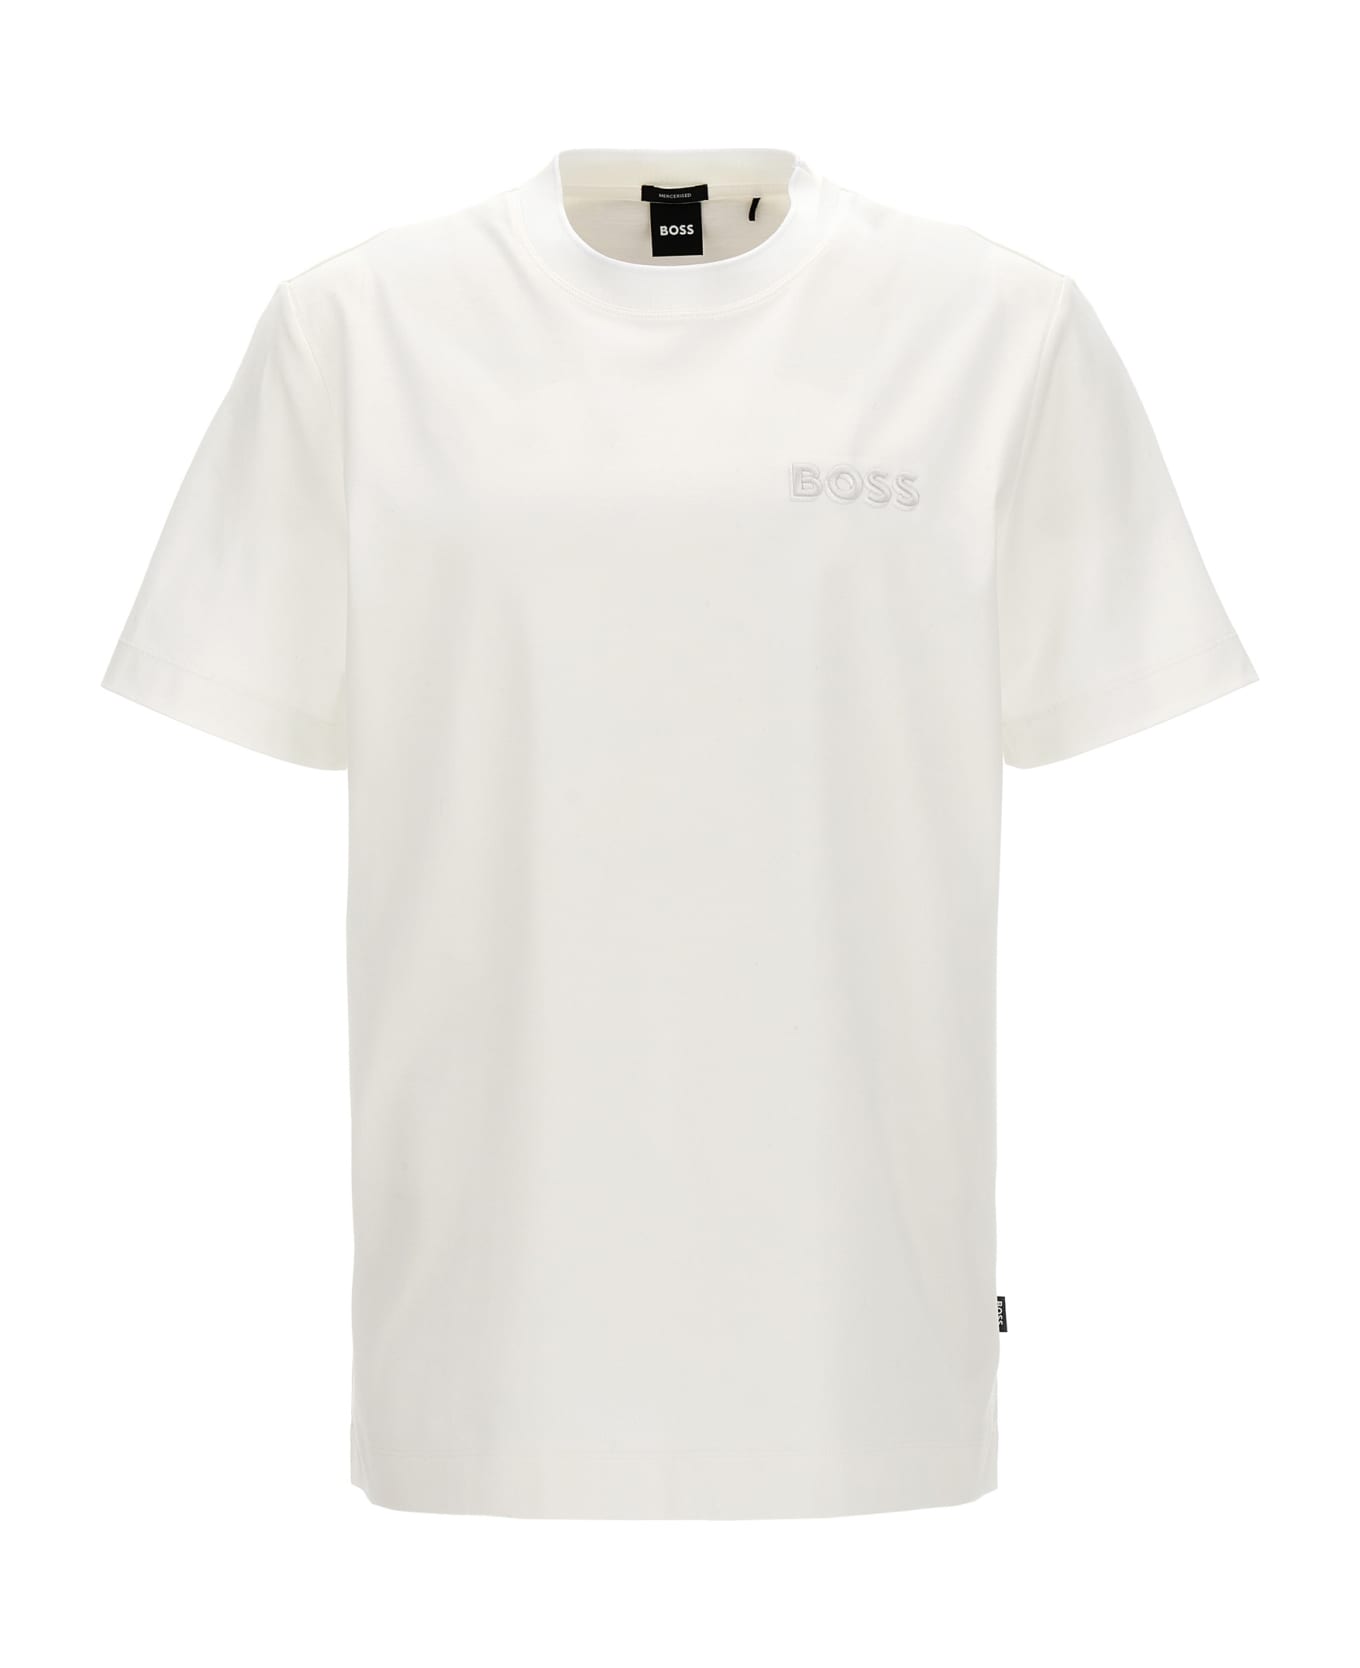 Hugo Boss Logo T-shirt - White シャツ